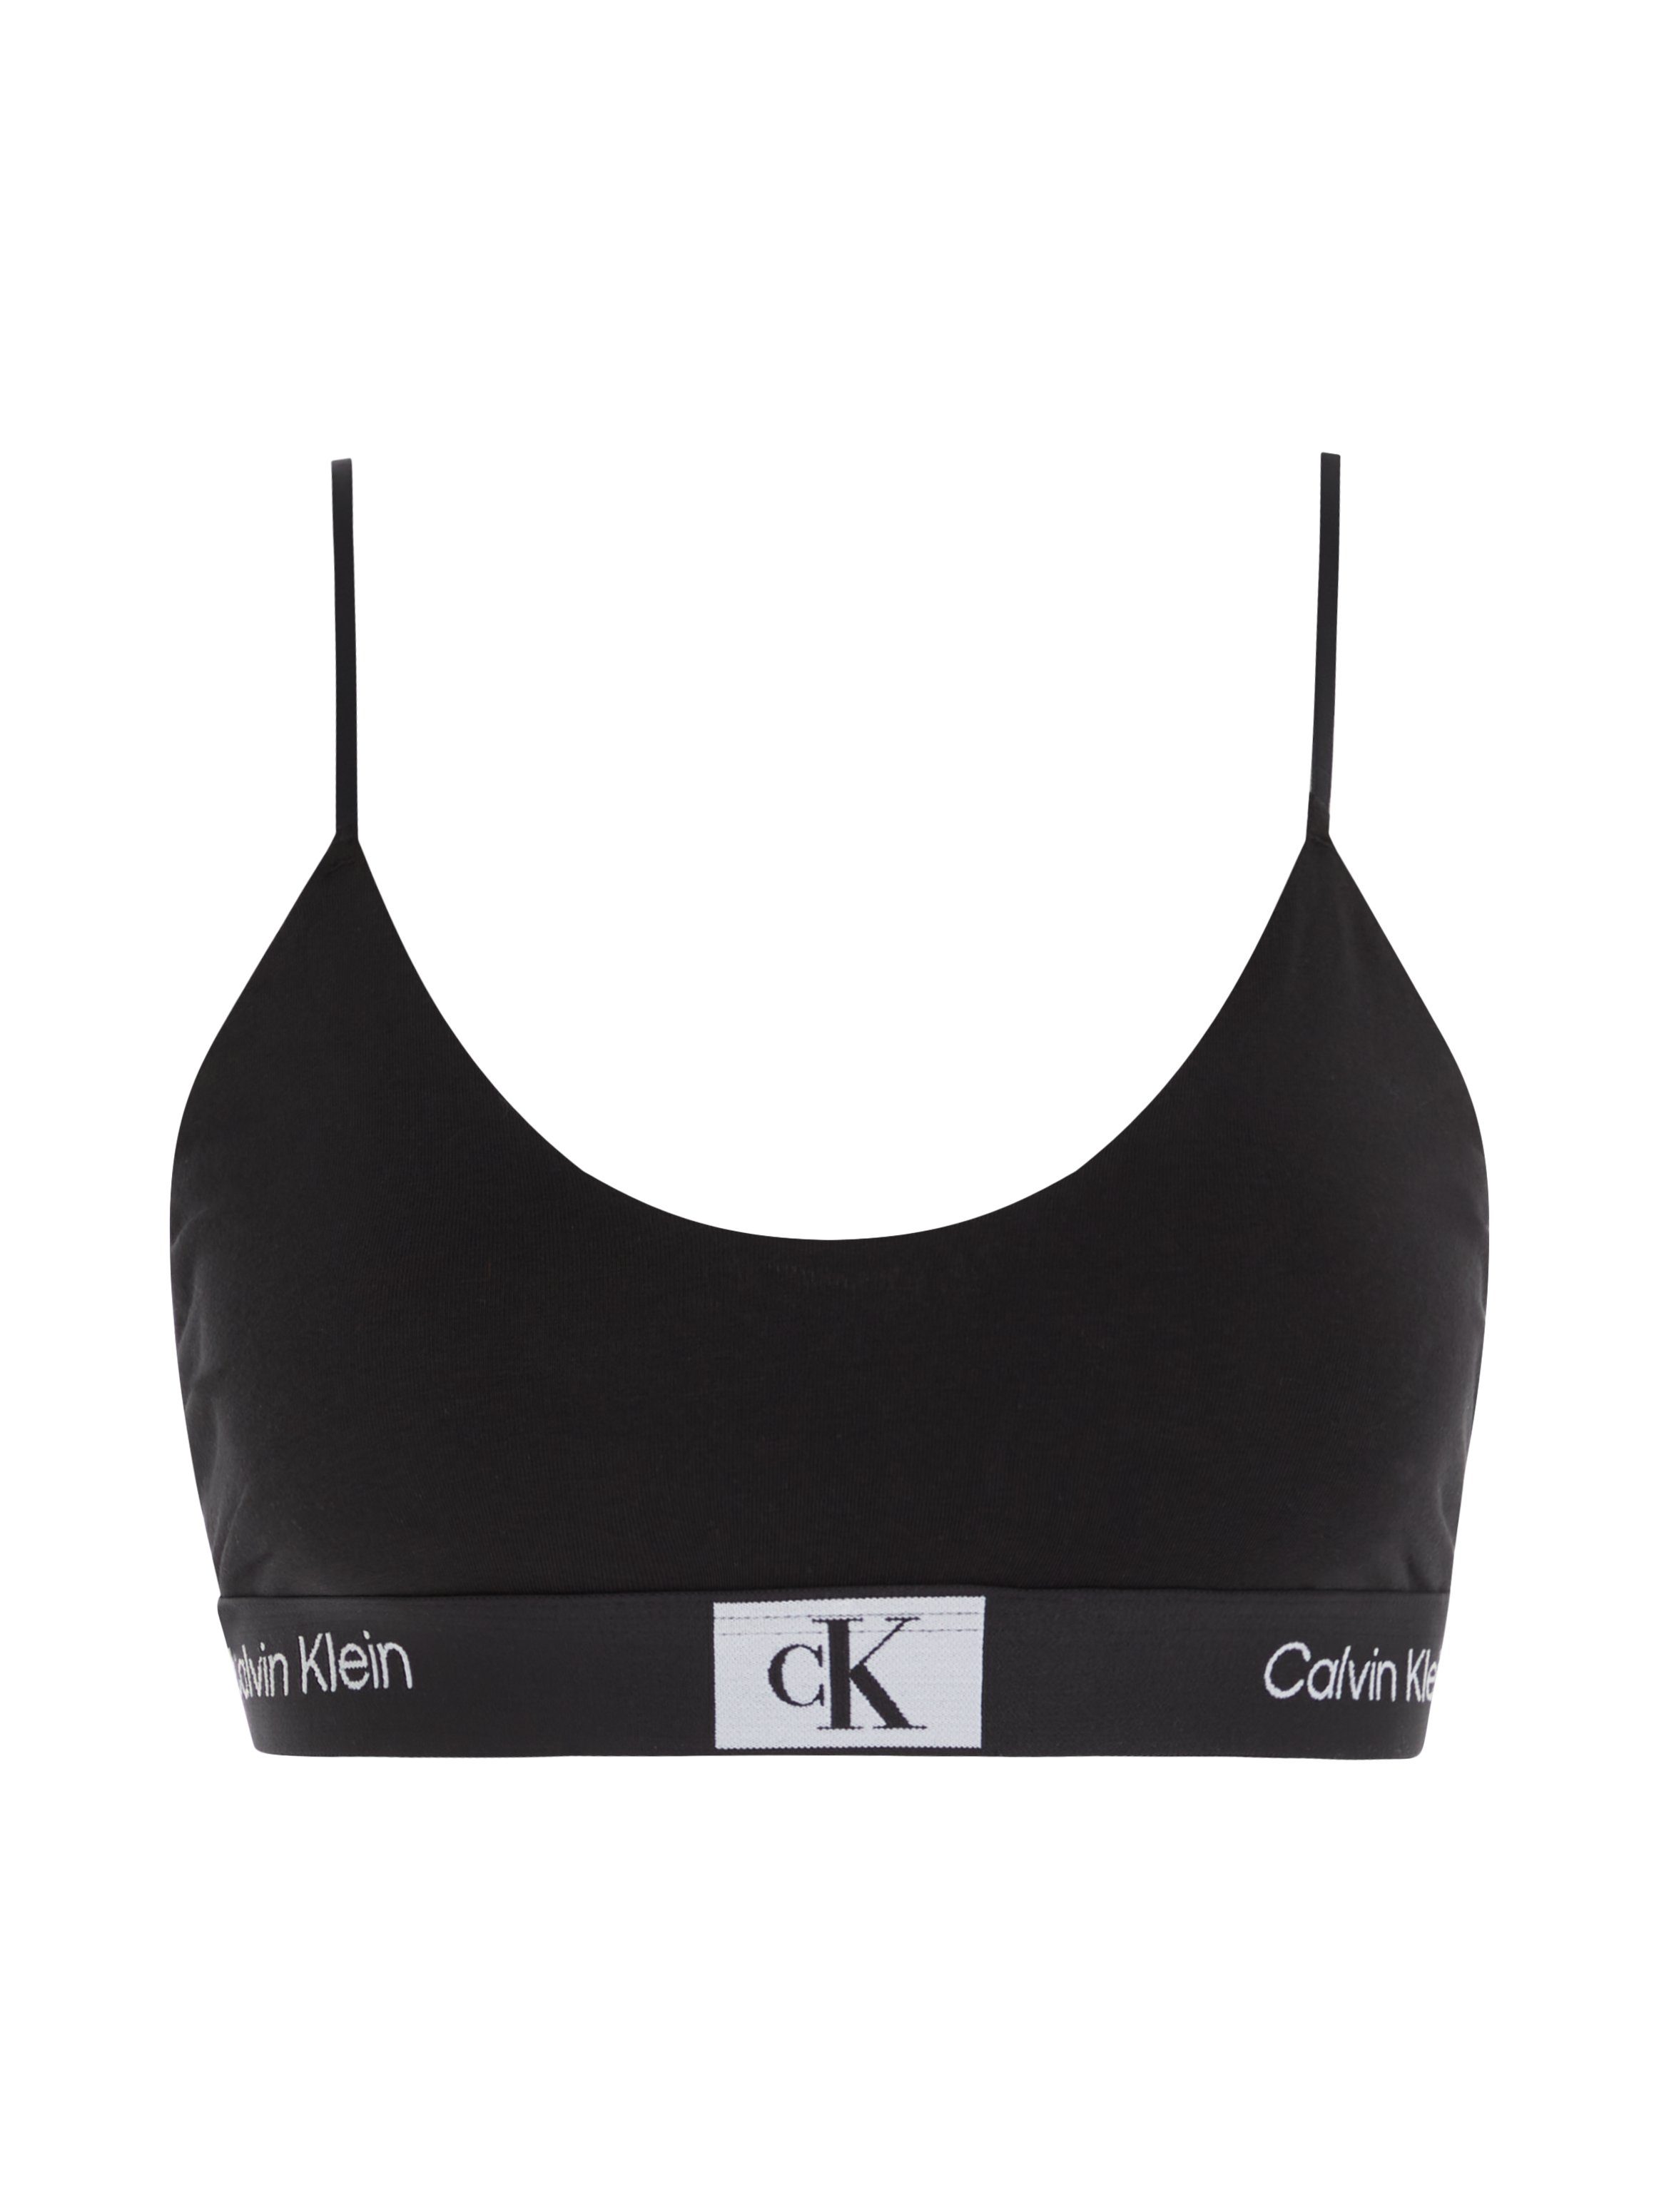 Calvin Klein Underwear BRALETTE UNLINED Bralette-BH mit BLACK Alloverprint